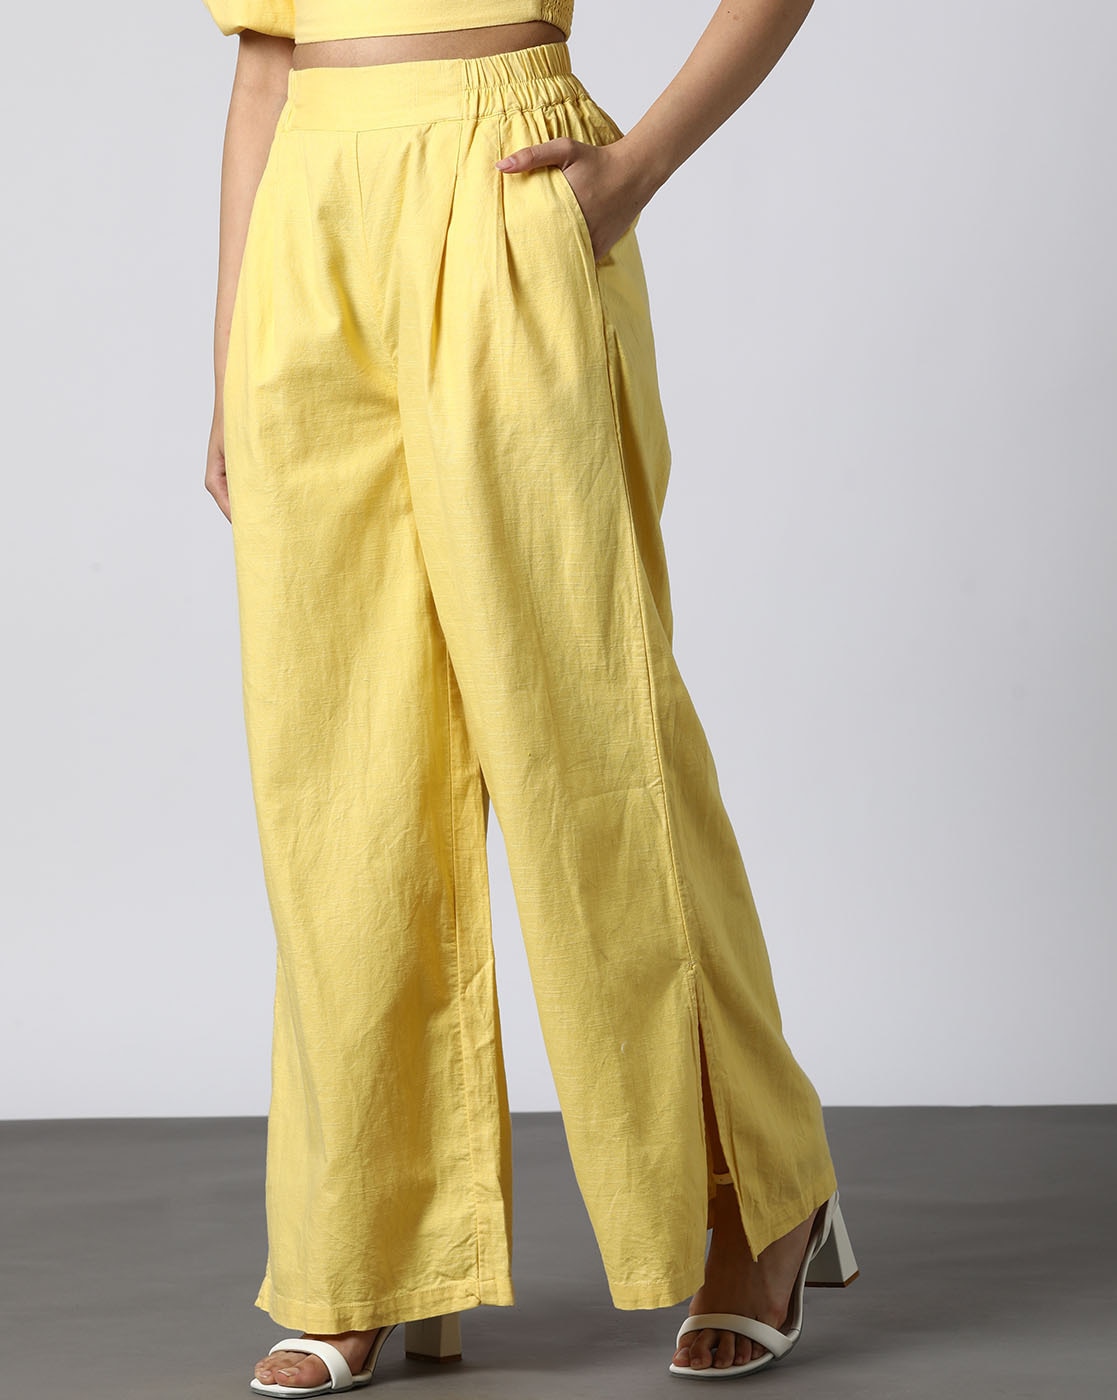 Lemon Yellow Cotton Flax Women Trousers